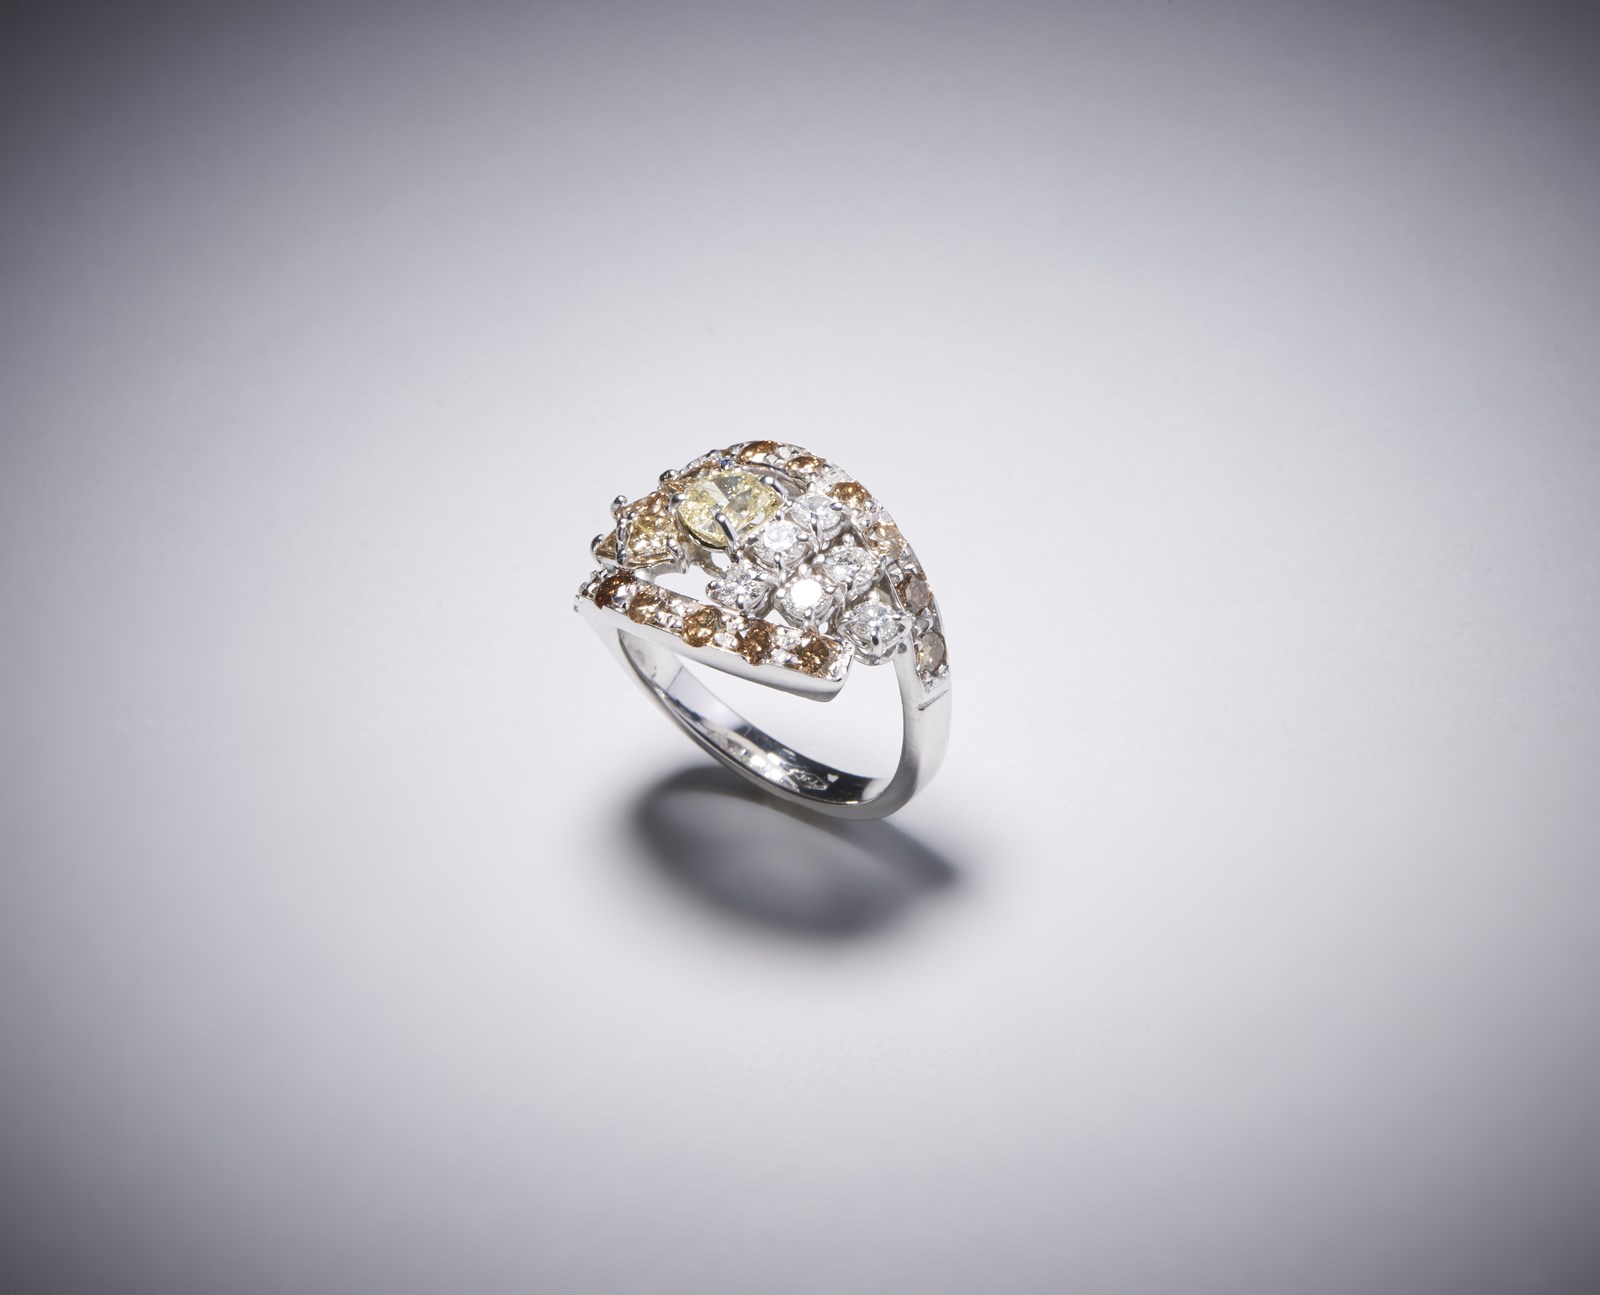 Anello in oro bianco 750/1000 con diamante fancy yellow taglio a cuscino di circa 0,50 ct.; 6 diamanti bianchi taglio a brillante per 0,45 ct. e diamanti brown taglio a brillante di circa 1,00 ct. (. )